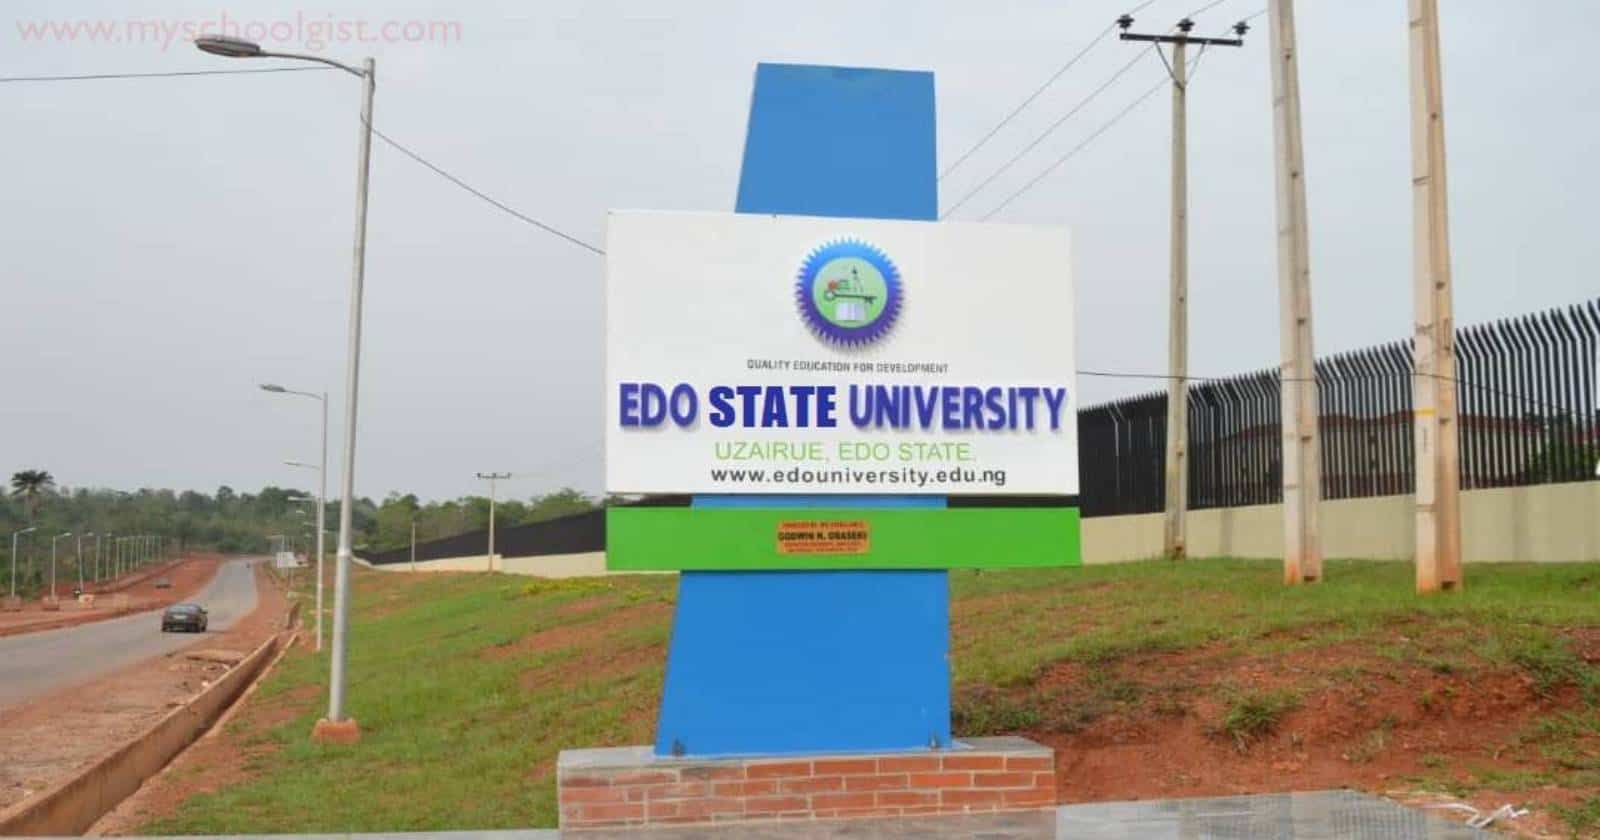 Edo State University (EDSU) Scholarship Awards